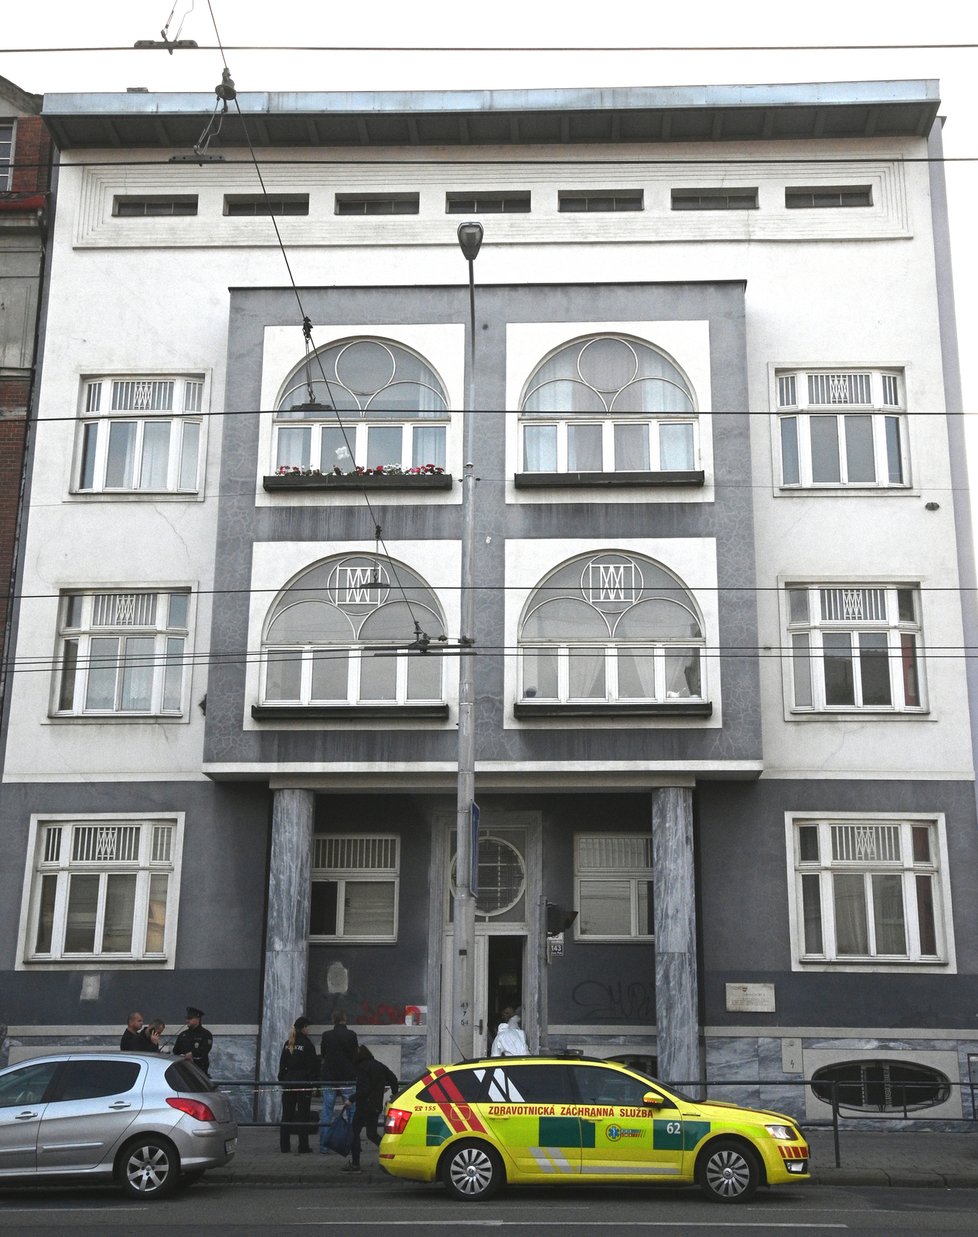 Jaruškův dům je činžovní dům postavený v Brně před 110 lety podle projektu architekta Josefa Gočára.